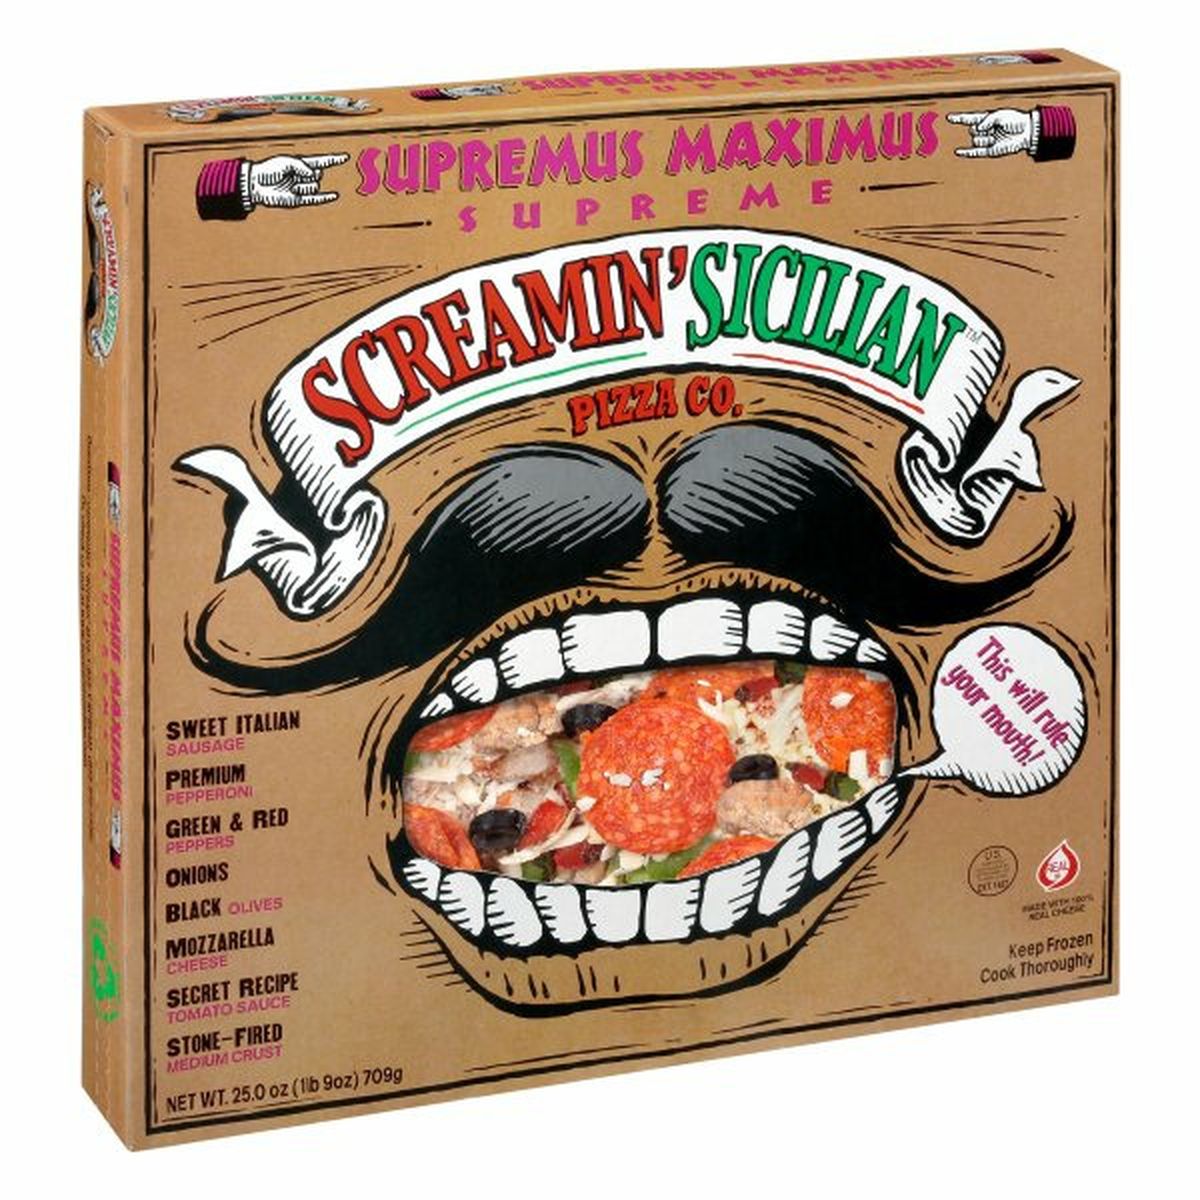 Calories in Screamin' Sicilian Supremus Maximus Pizza, Supreme